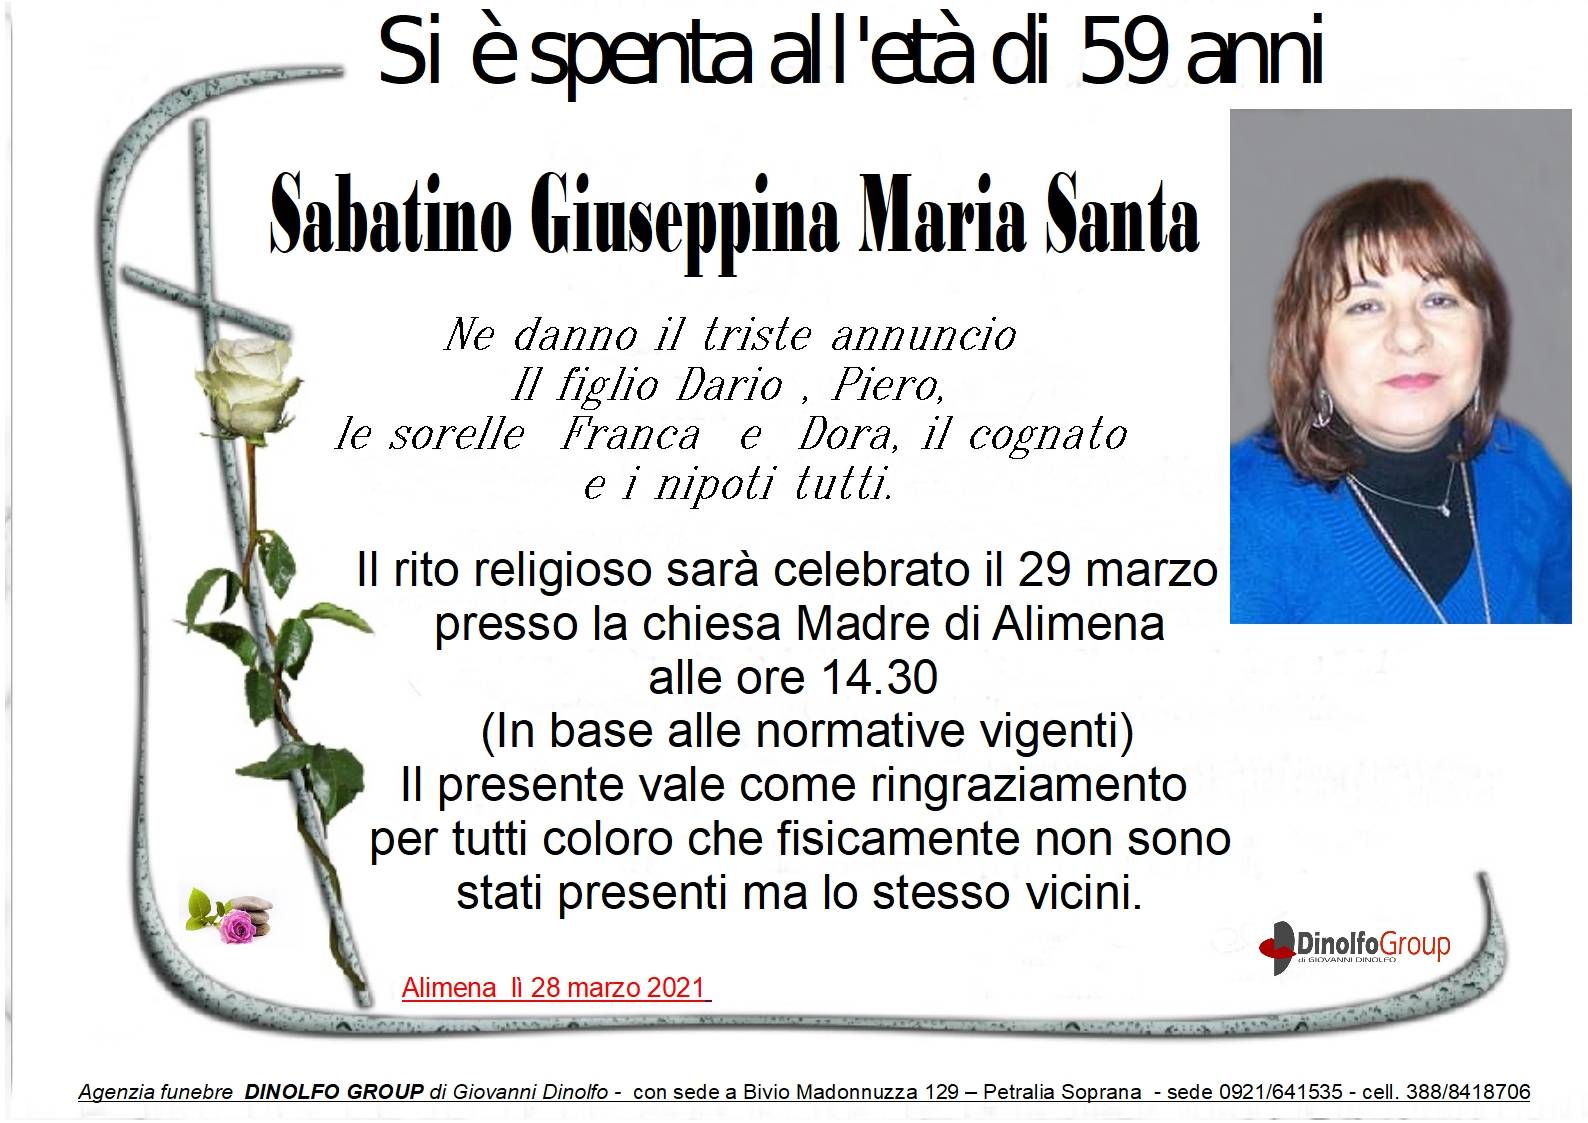 Giuseppa Maria Santa Sabatino